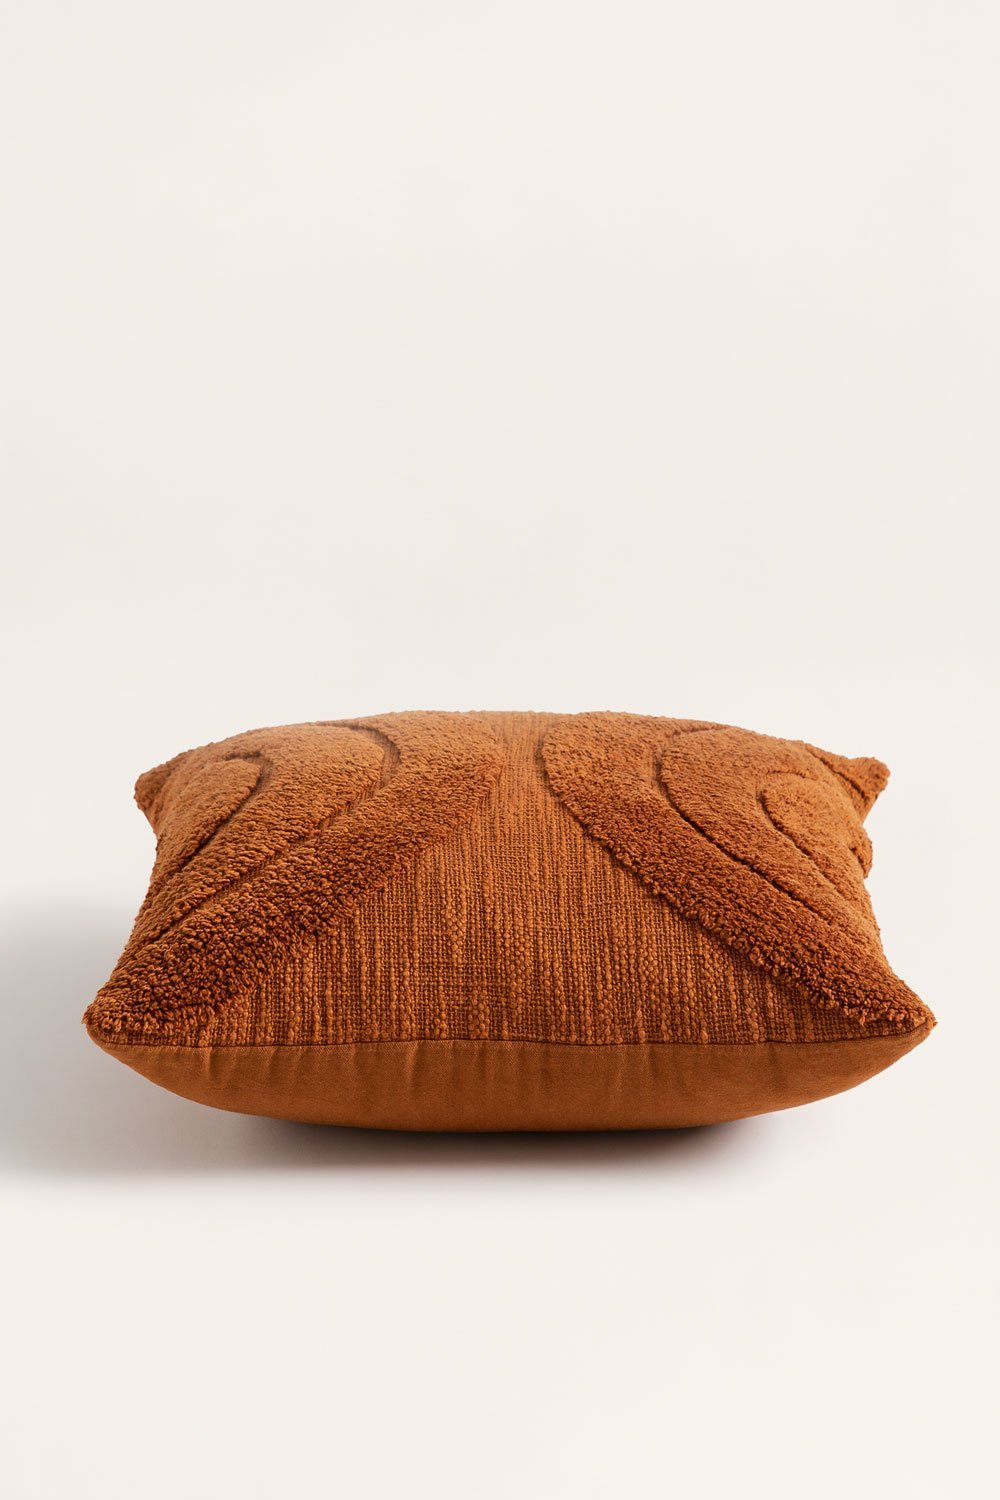 Kwadratowa poduszka z bawełny (45x45 cm) Zaylee, obrazek w galerii 2